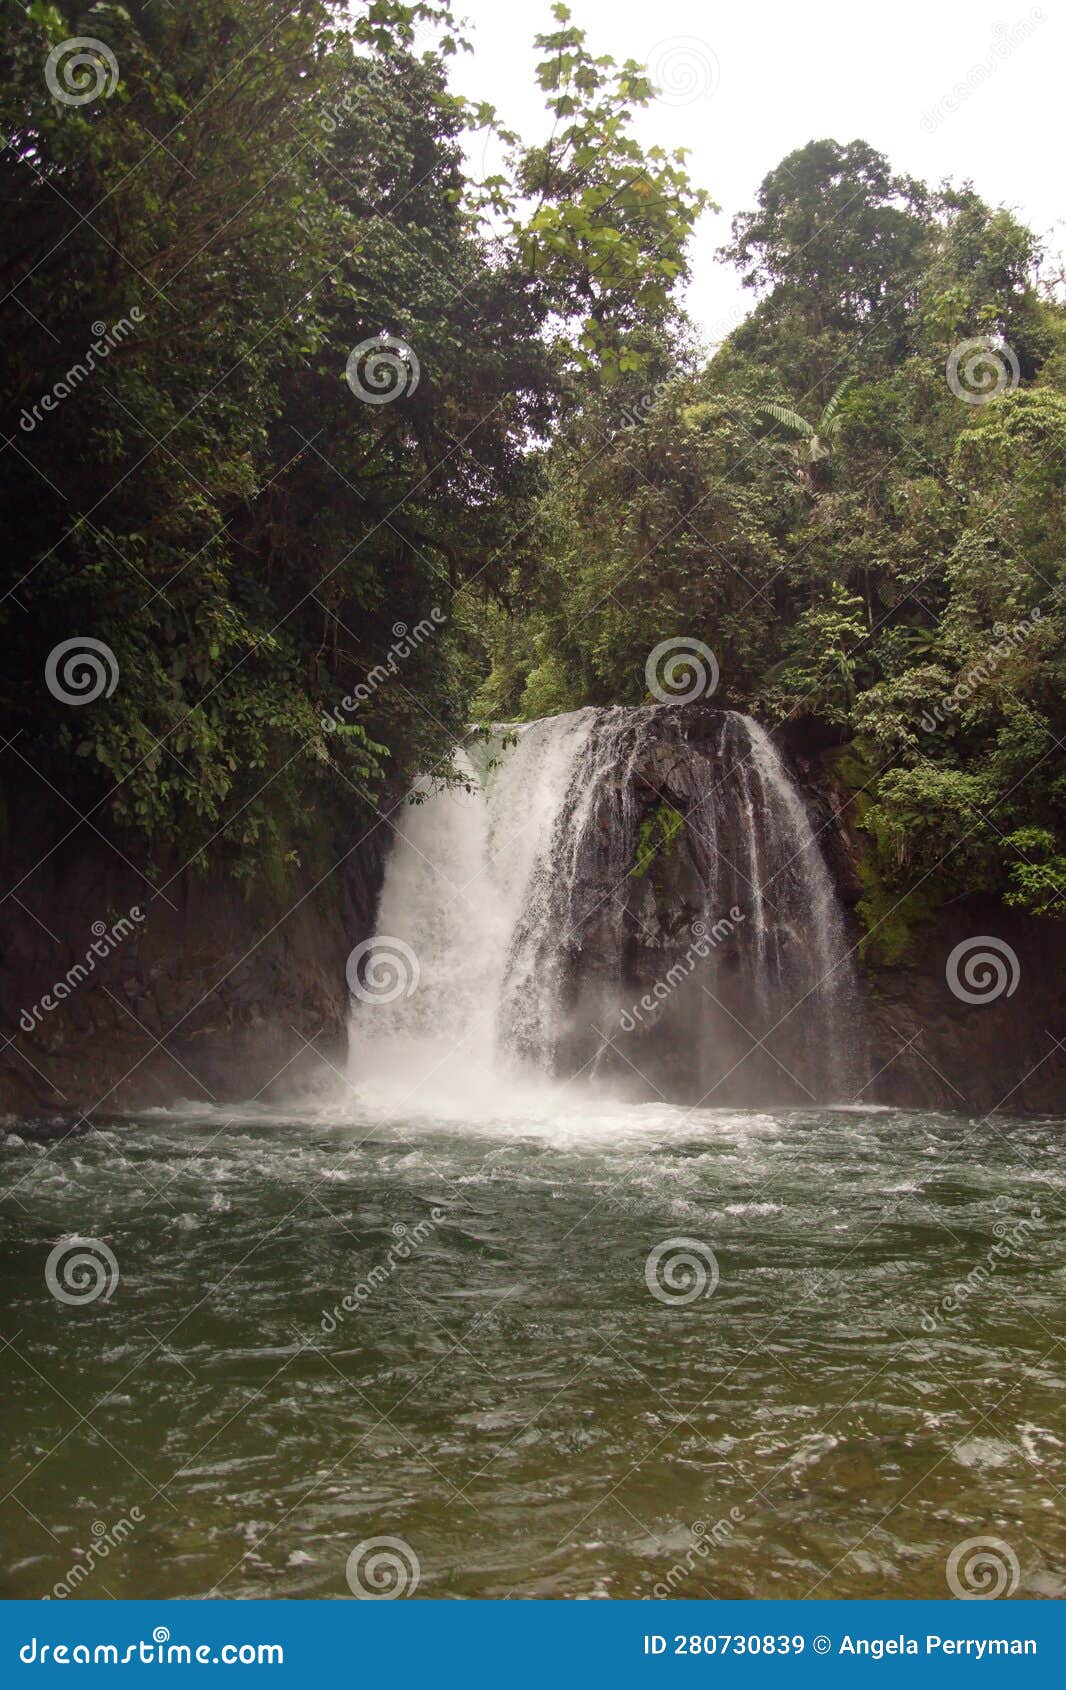 waterfall on the hollin river in ecuador